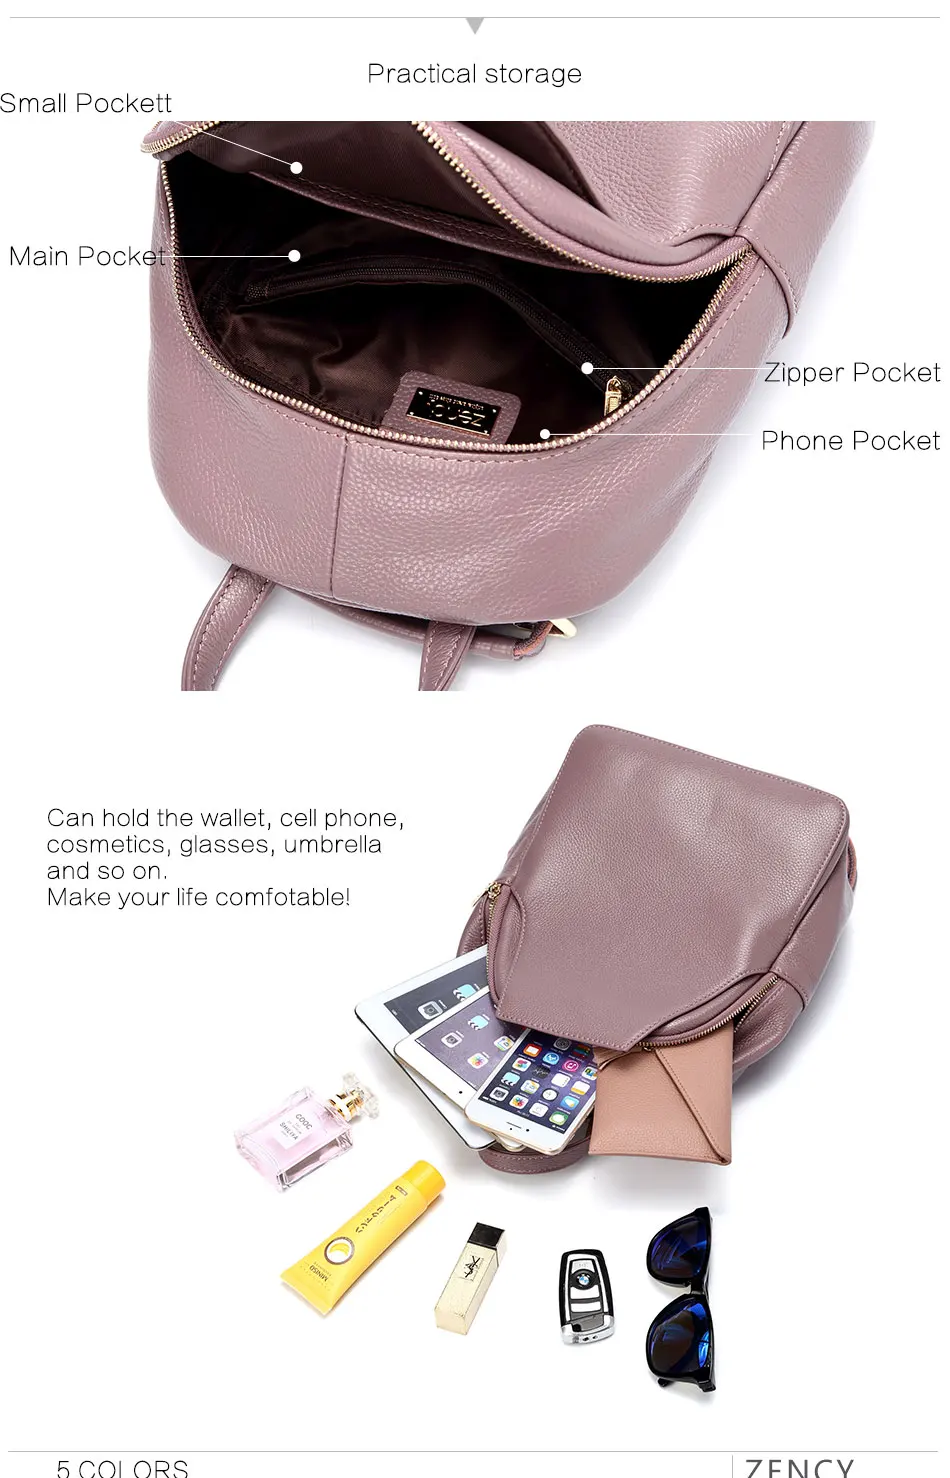 Очаровательный женский рюкзак Zency, натуральная кожа, противоугонная кнопка, элегантные женские дорожные сумки, школьный ранец для девочек, праздничный ранец